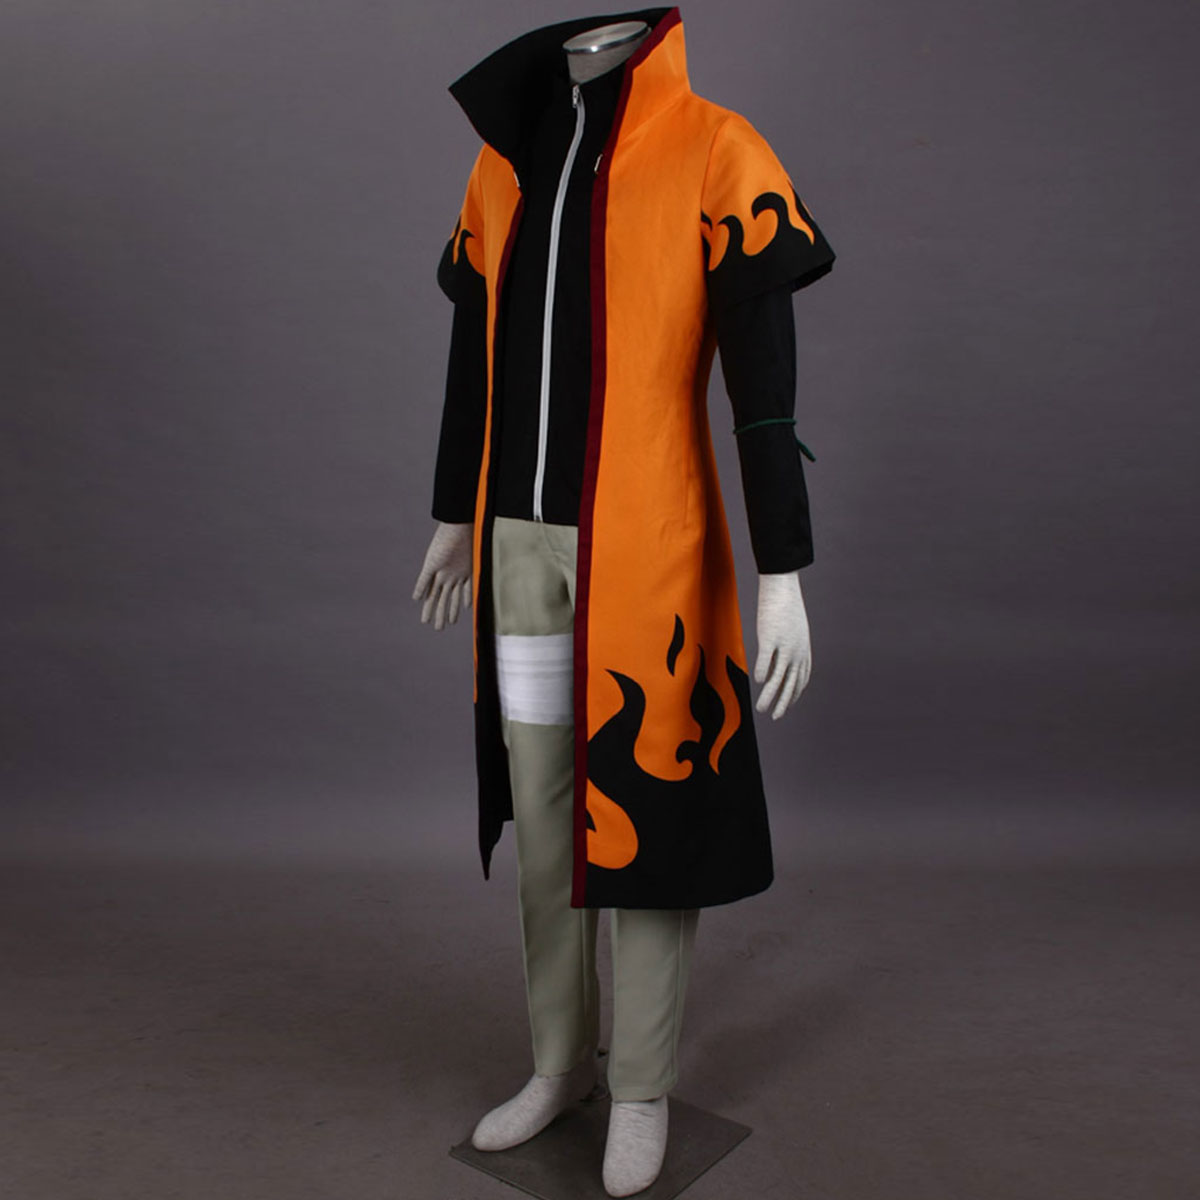 Naruto Sixth Hokage Naruto Uzumaki 5 Anime Cosplay Costumes Outfit